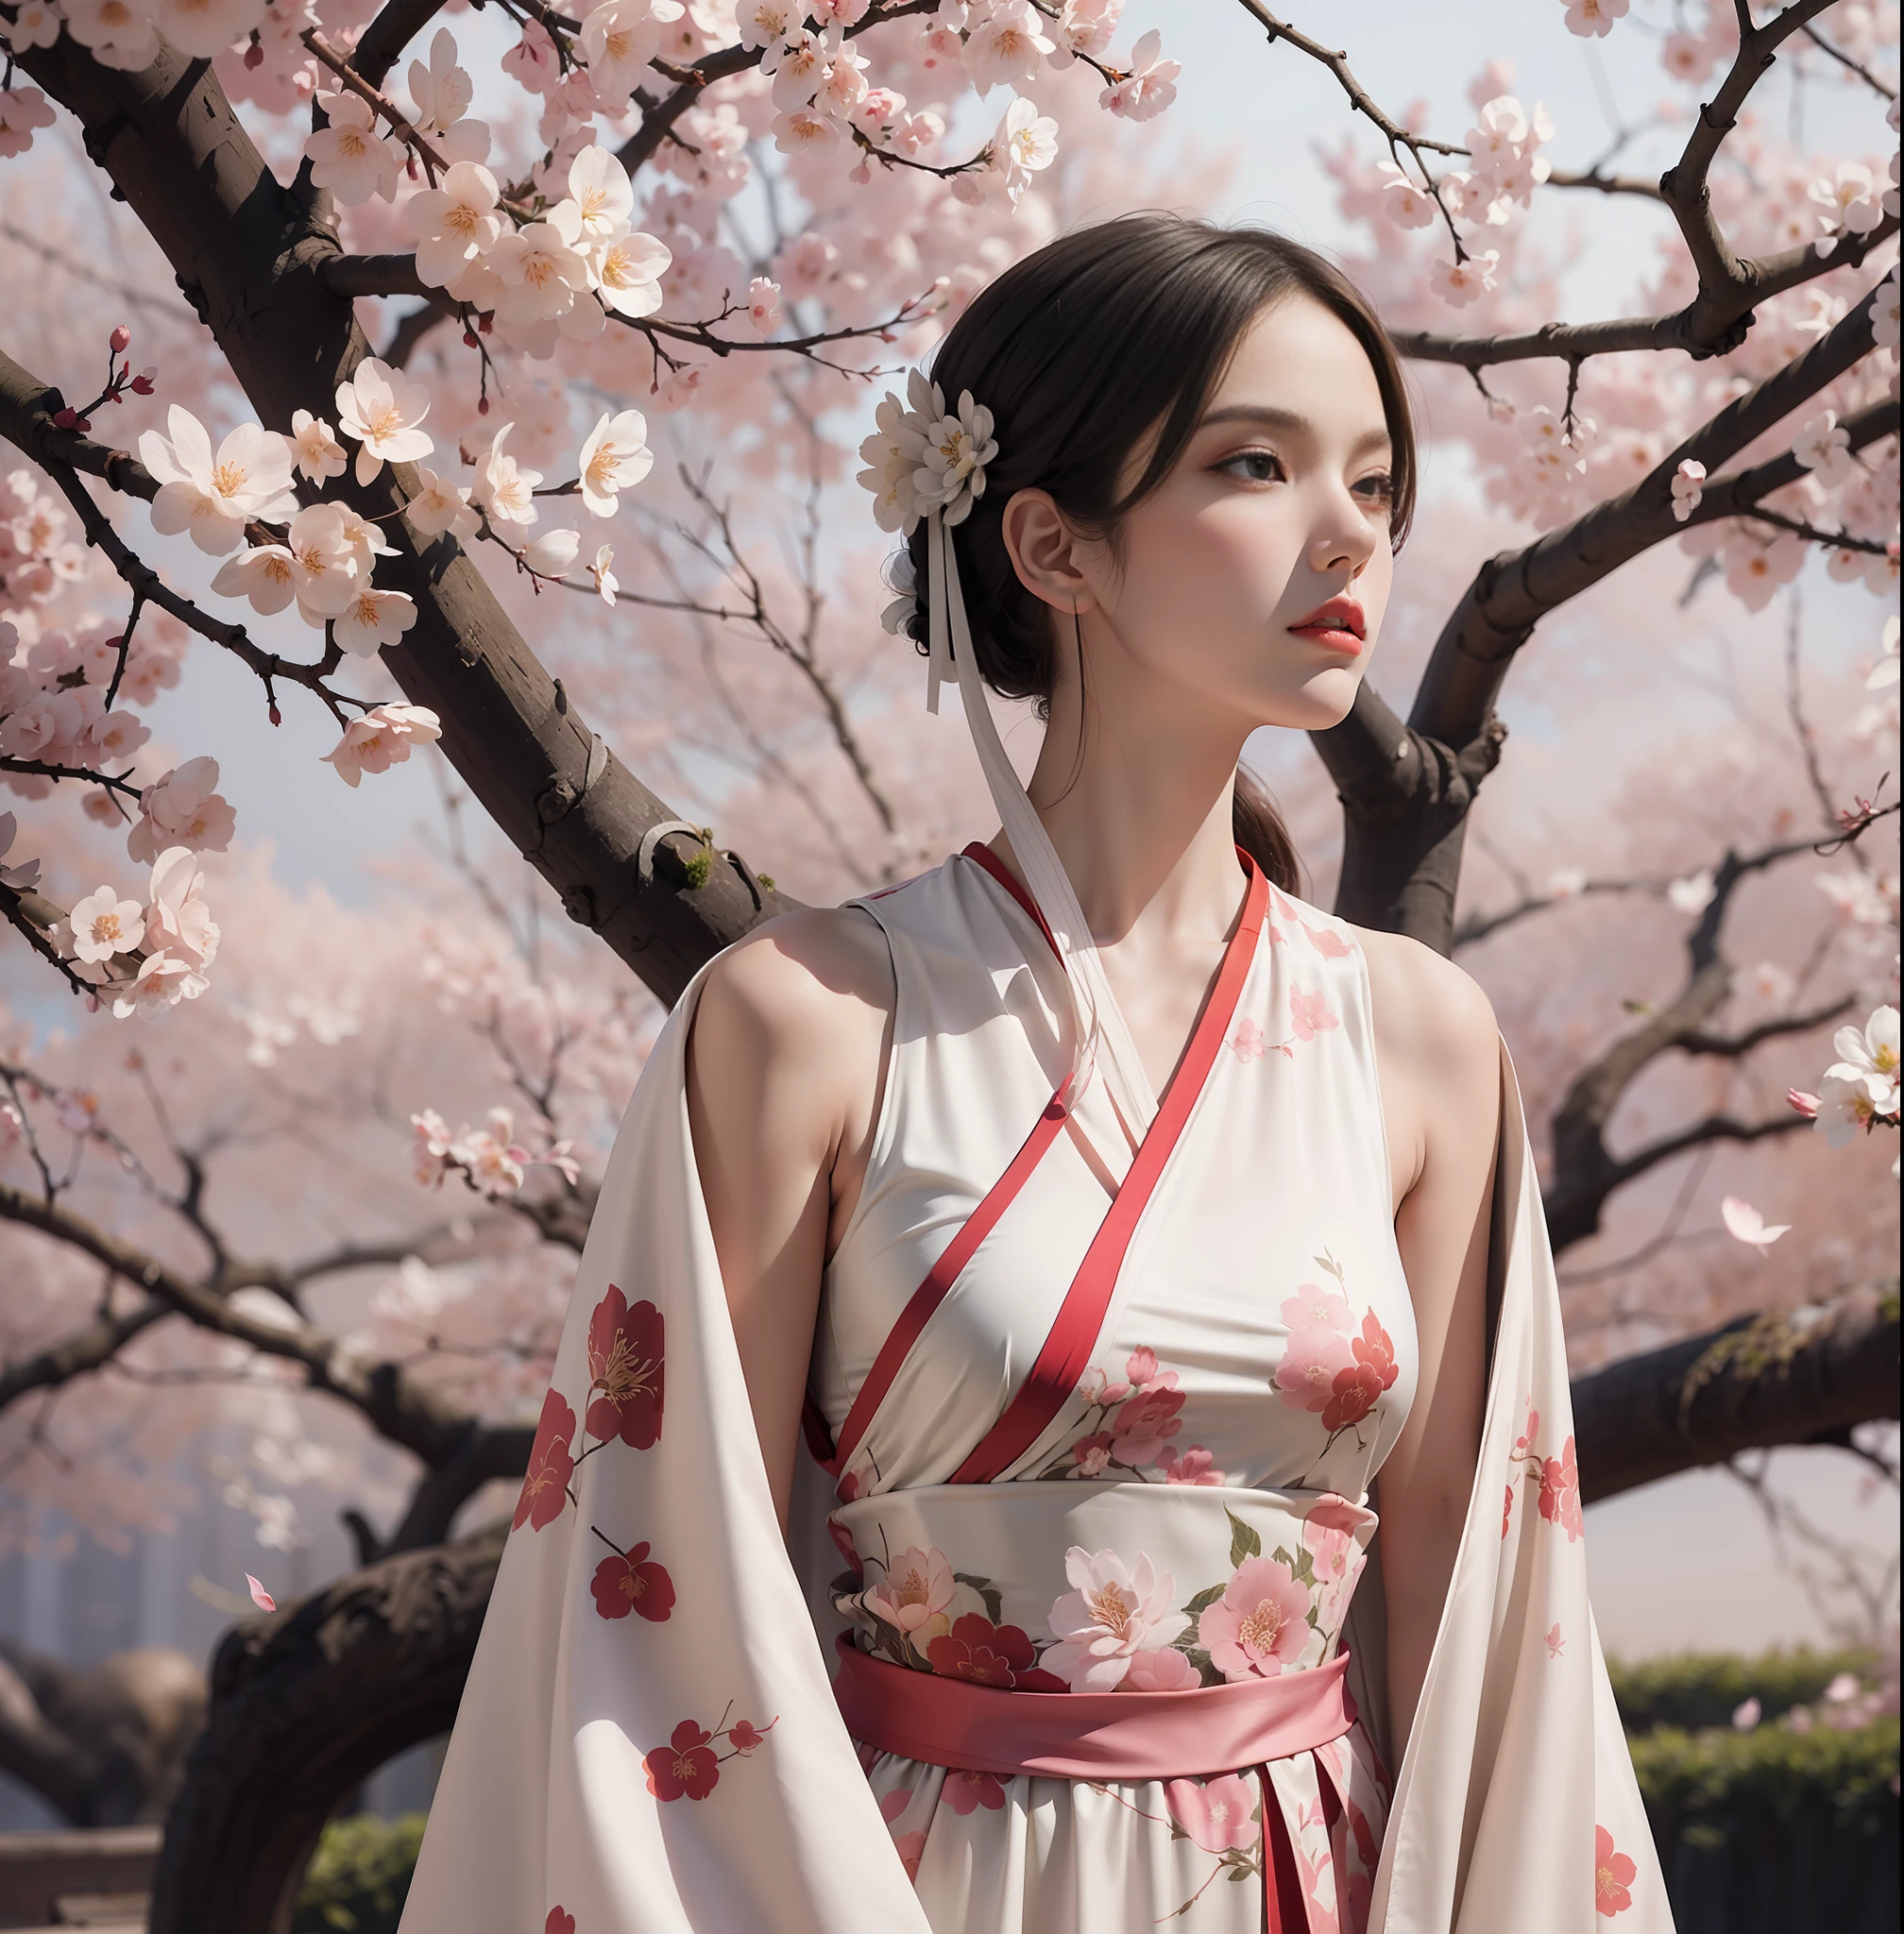 身着明代丝绸长袍的模特形象, 凝望远方, 以超广角拍摄, 置身于樱花盛开的风格化花园之中. 中等的: 官方, 艺术家: 埃里克·马迪根·赫克 --ar 5:7 50 --风格原始 --s 2